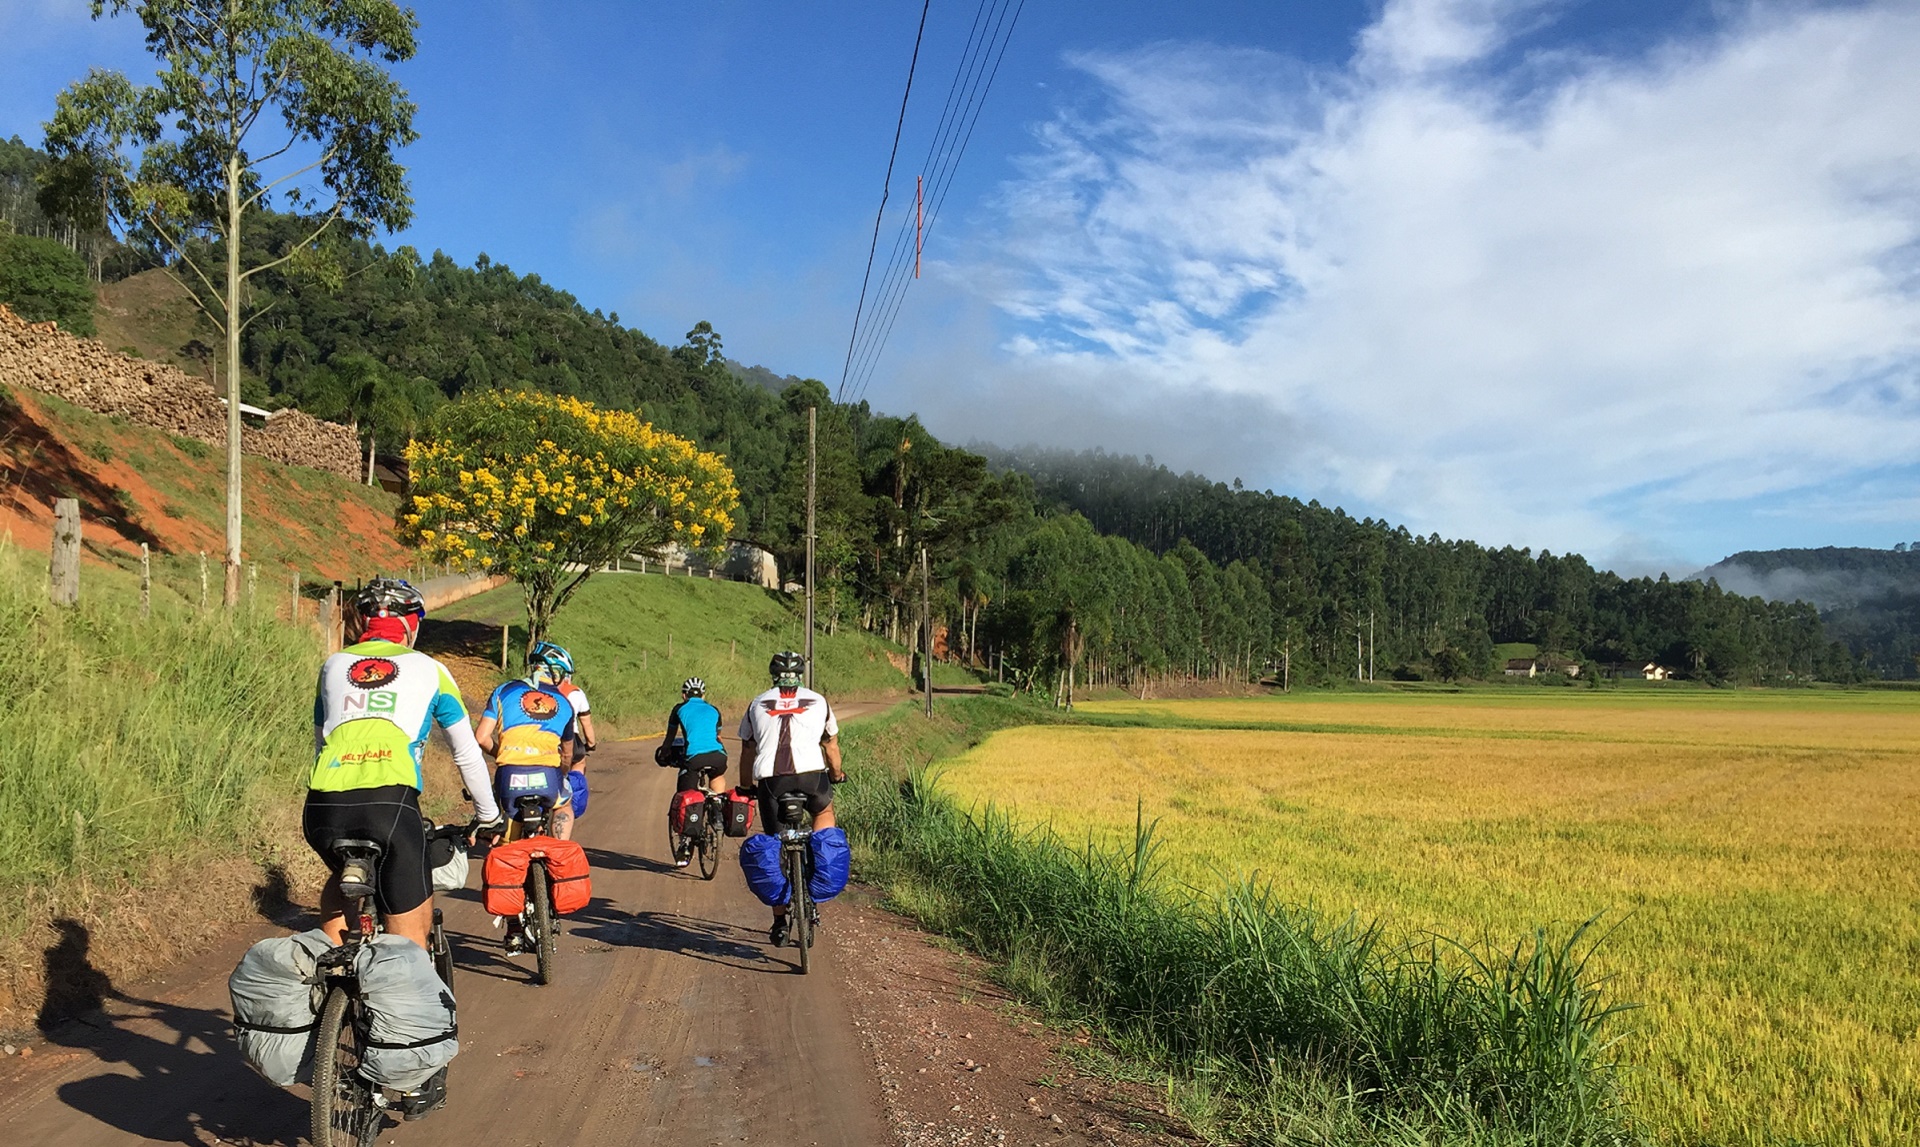 Cicloturistas passando ao lado da arrozal